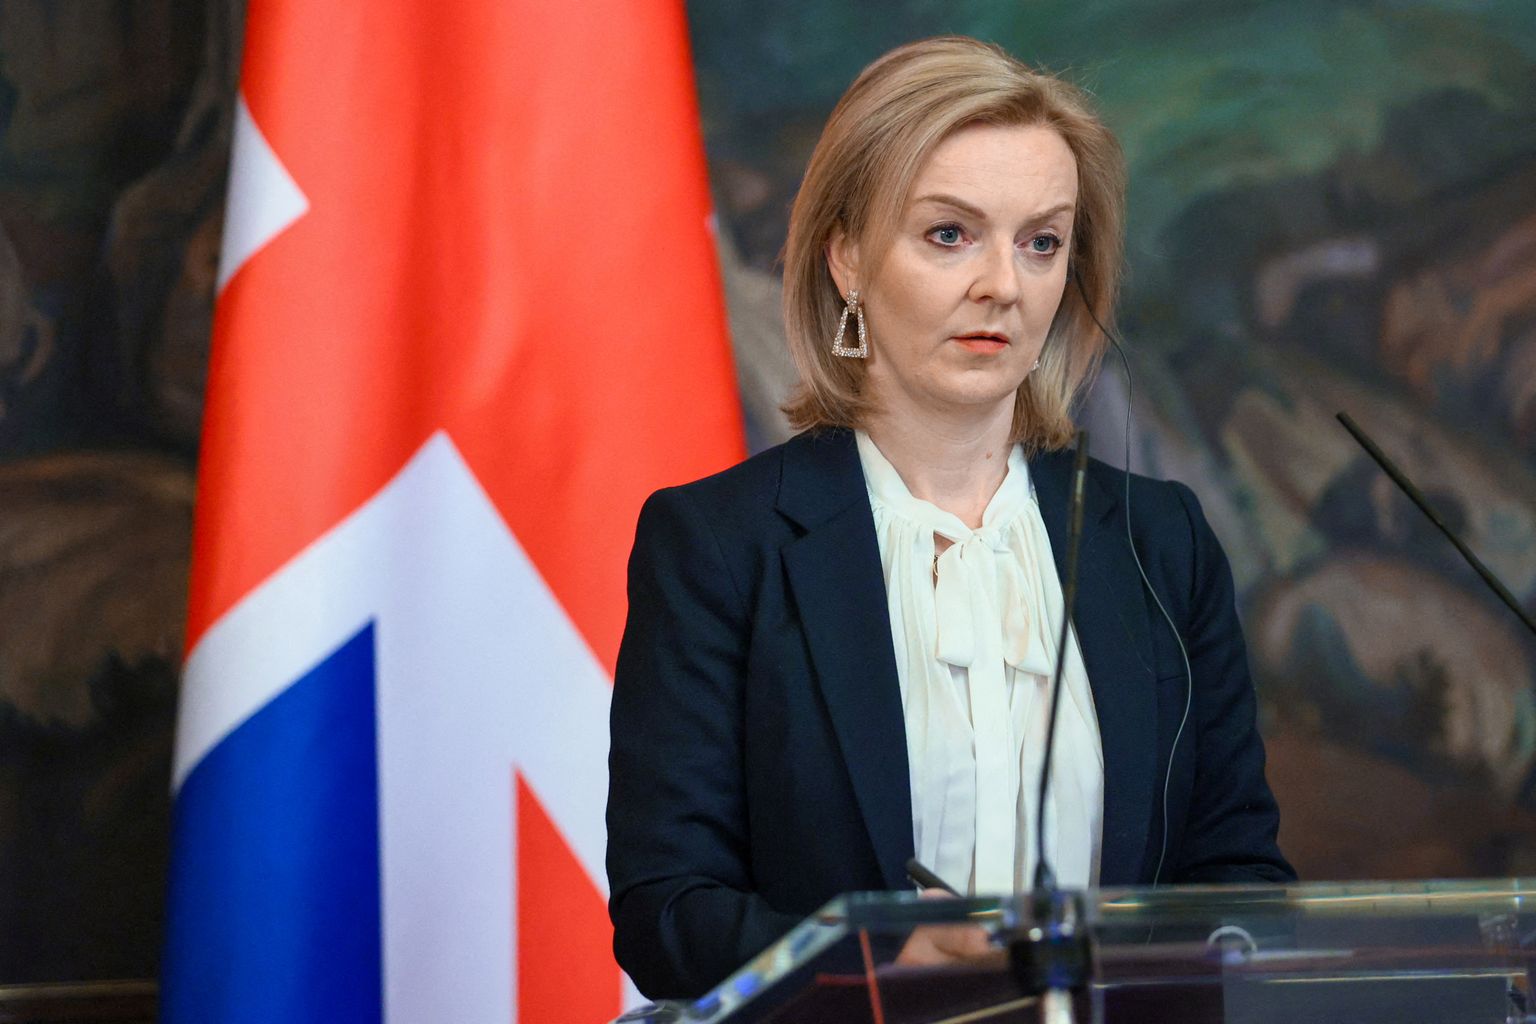 Briti välisminister Liz Truss 10. veebruaril Moskvas, kus ta kohtus Vene ametikaaslase Sergei Lavroviga.